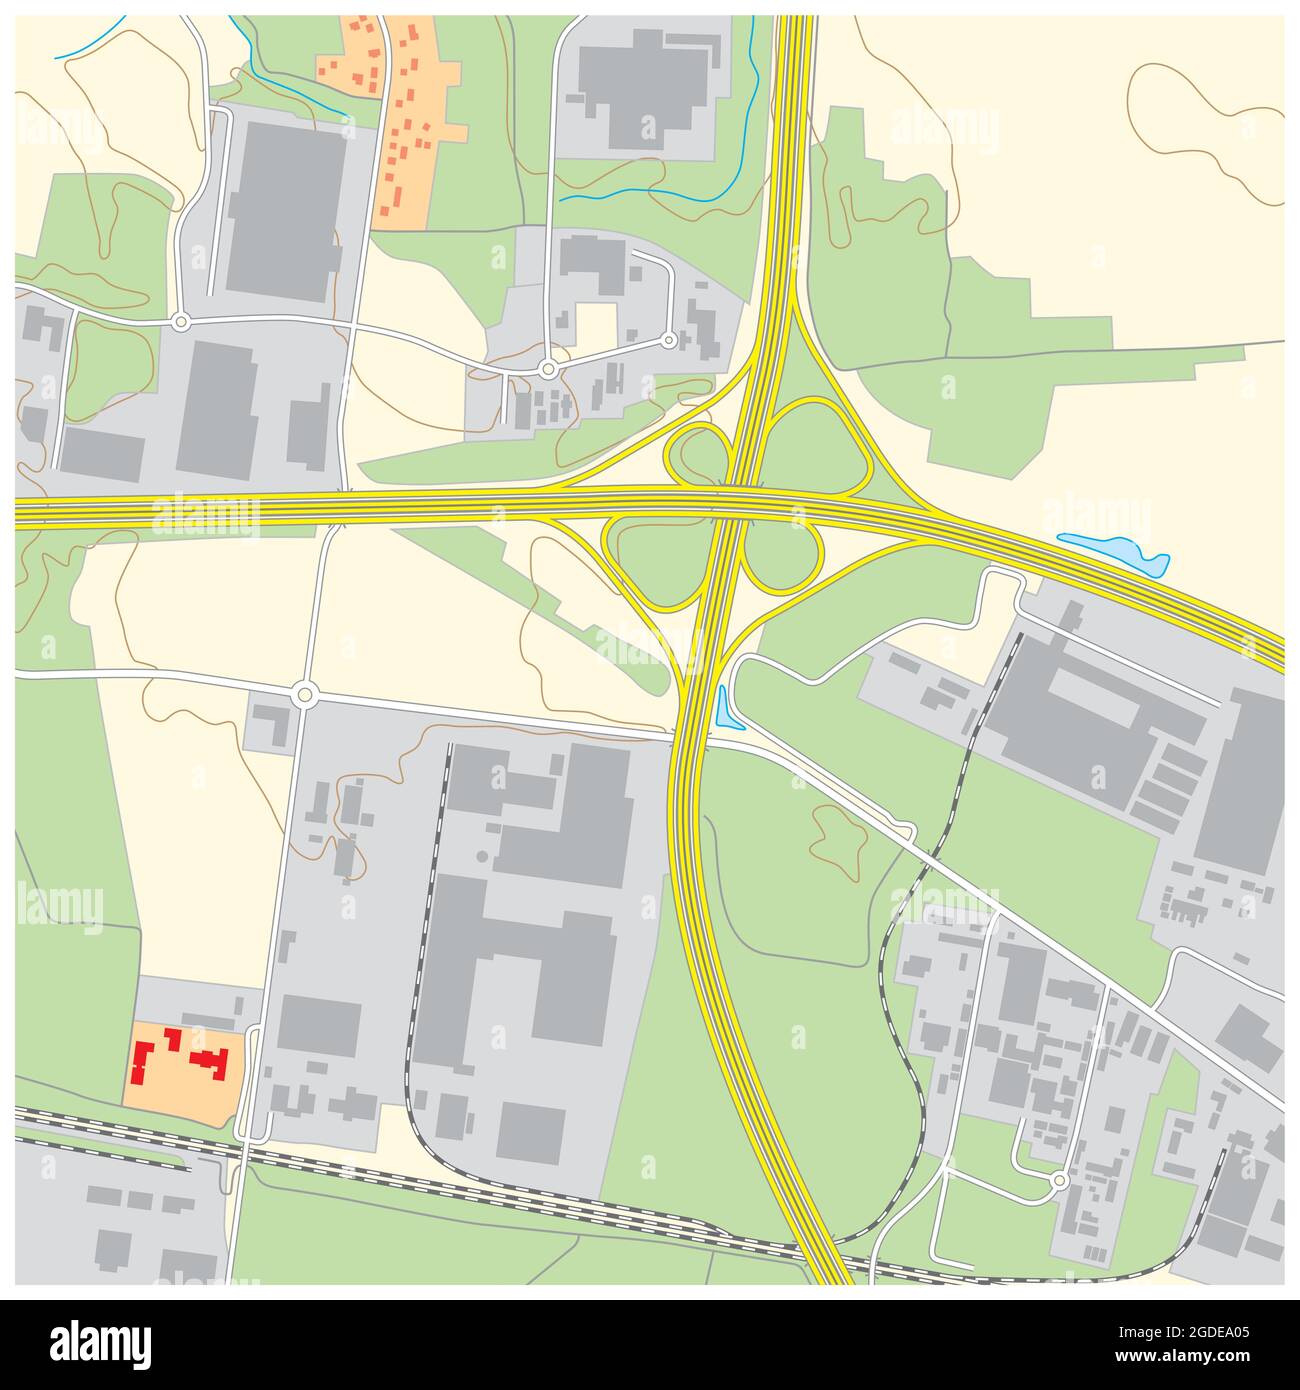 Imaginäre topografische Karte eines Gebiets mit Gebäuden und Straßen Stock Vektor